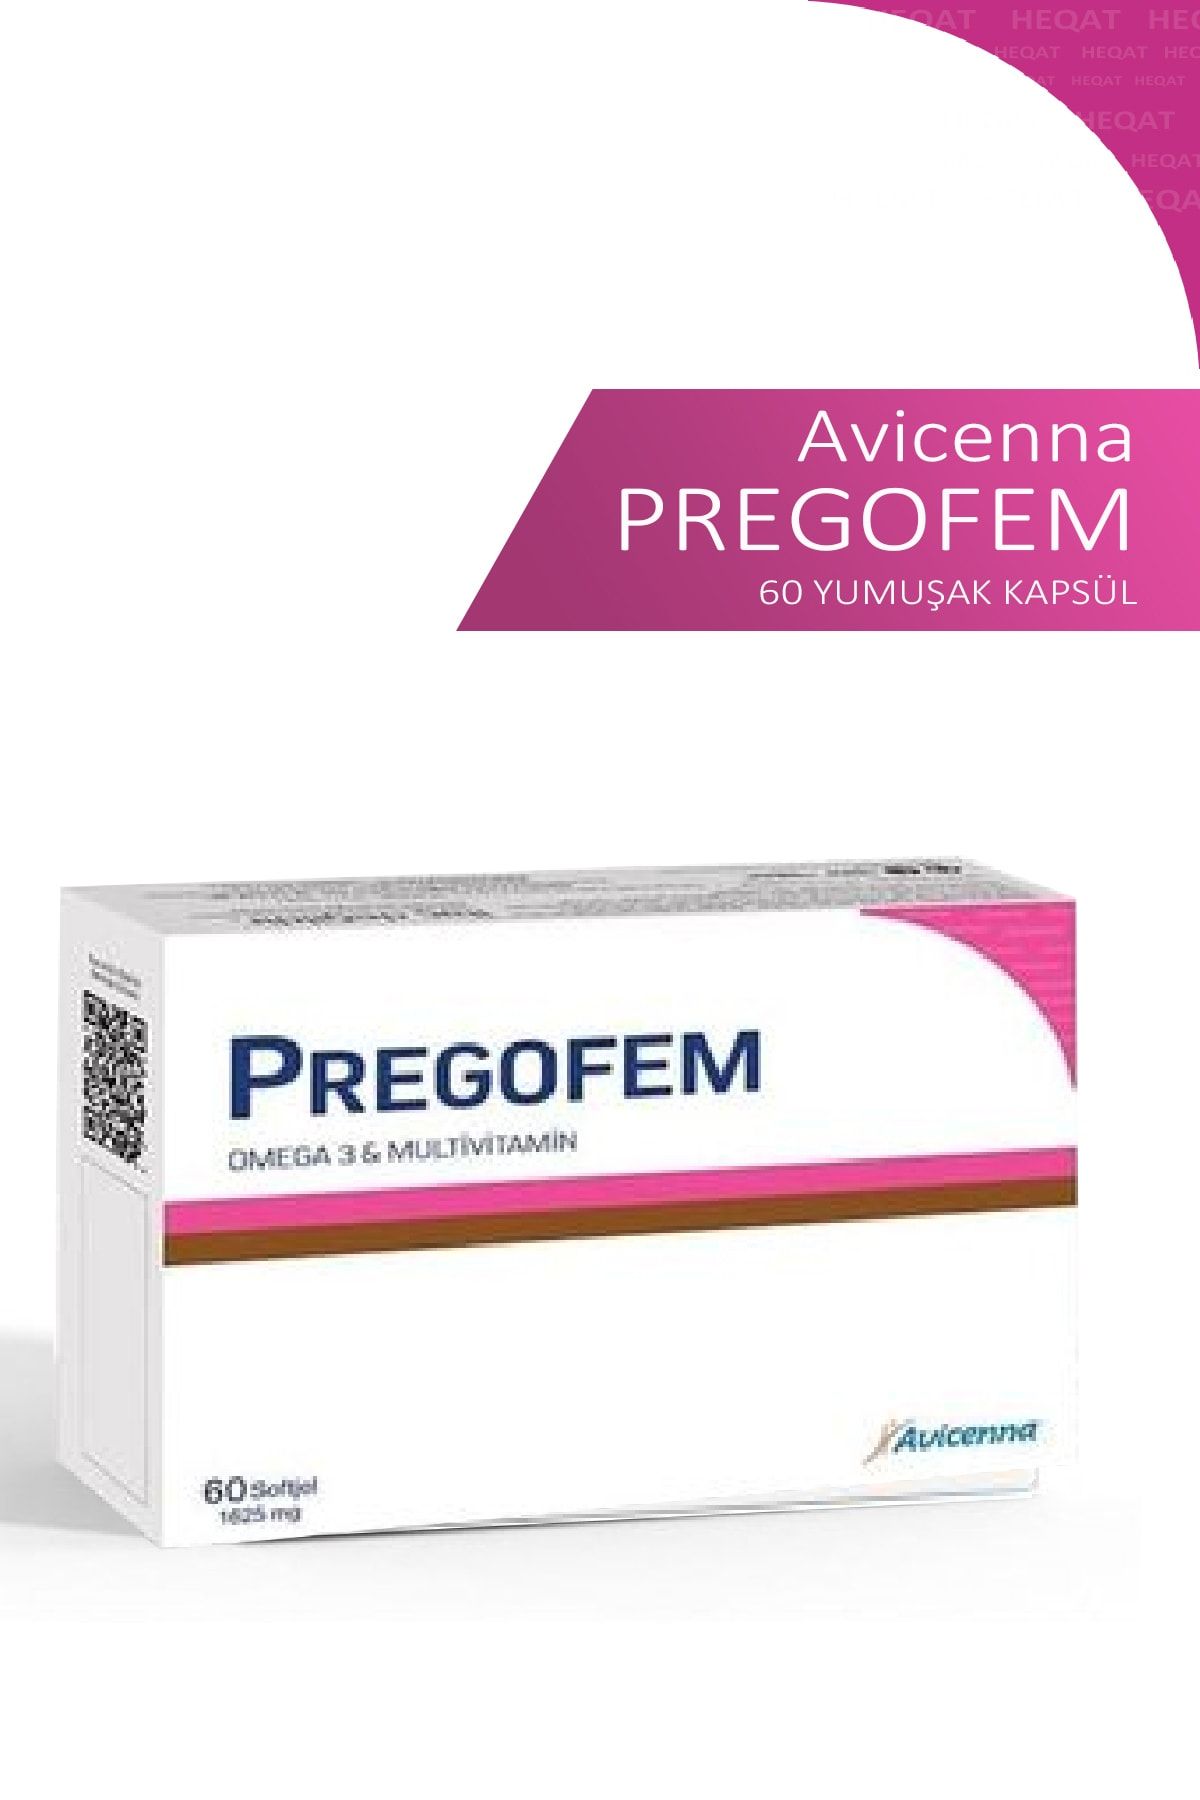 Avicenna Pregofem - Omega 3 & Multivitamin İçeren Takviye Edici Gıda - 60 Softgel Kapsül